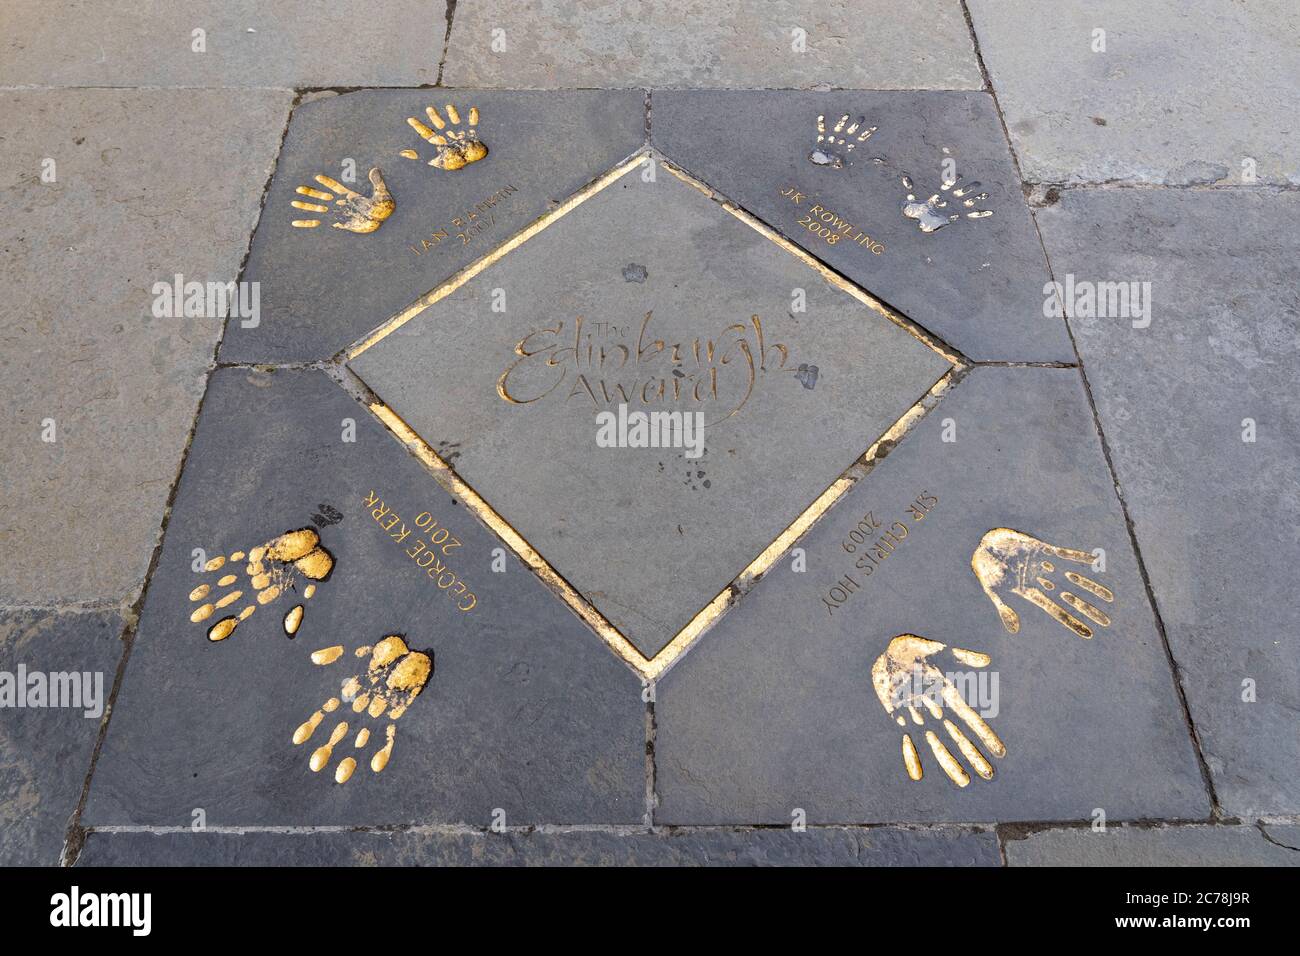 Le Edinburgh Award est imprimé à l'extérieur de City Chambers dans la vieille ville d'Edimbourg, en Écosse, au Royaume-Uni. Présente des empreintes de main de personnes célèbres d'Édimbourg. Banque D'Images